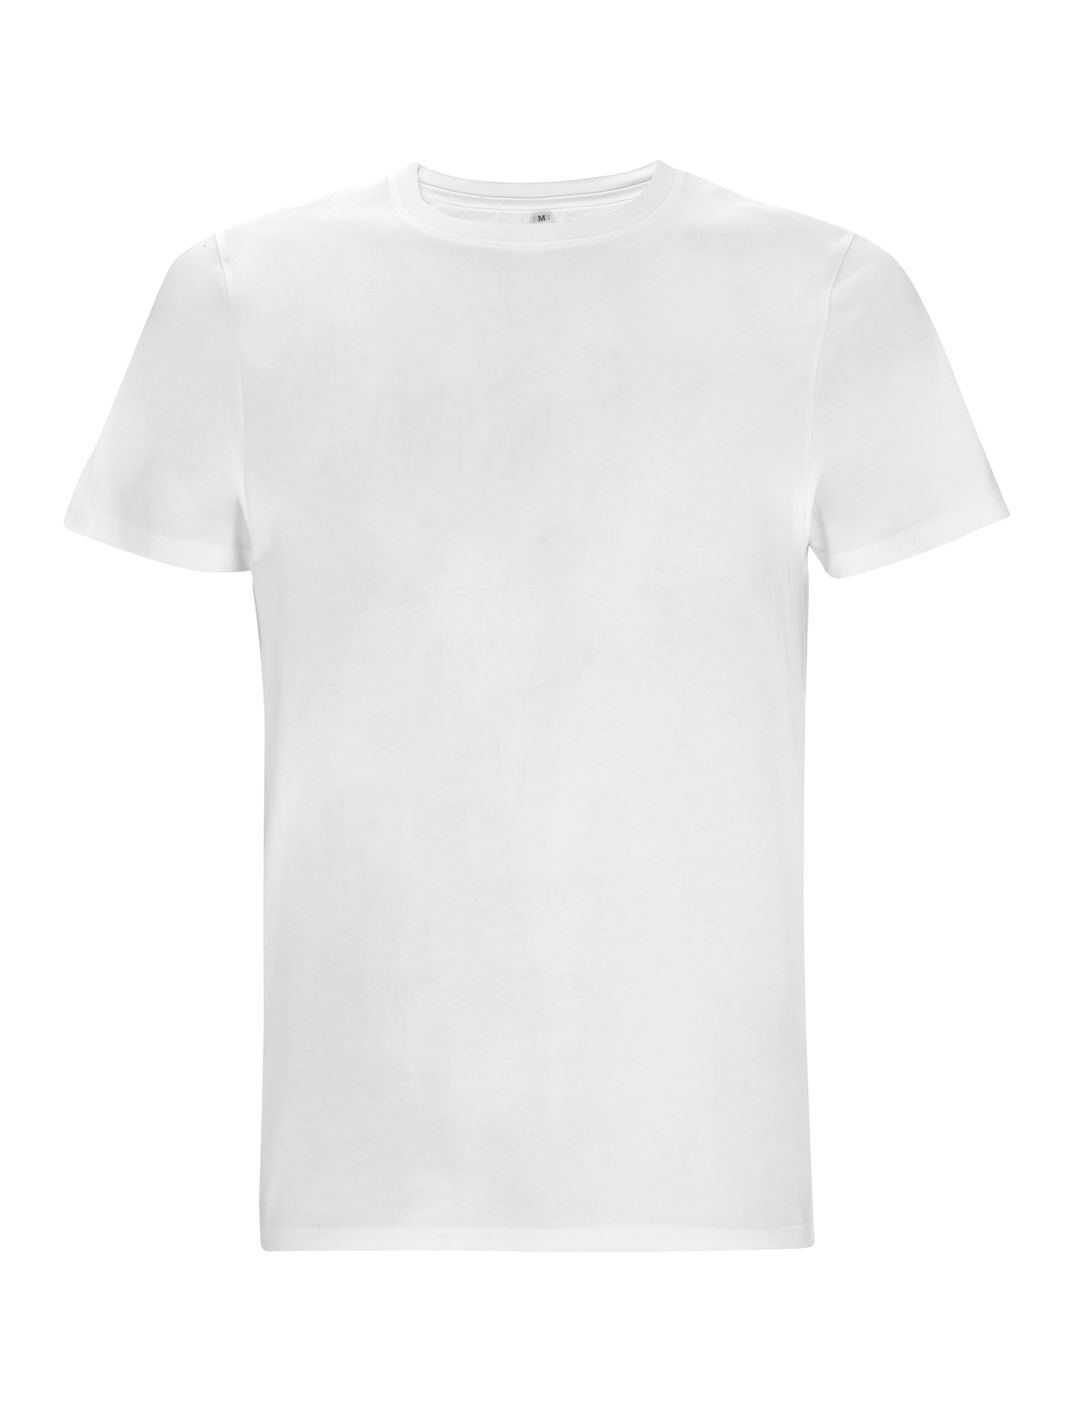 Biały ekologiczny t-shirt unisex z własnym nadrukiem firmowym Continental Jersey t-shirt EP18